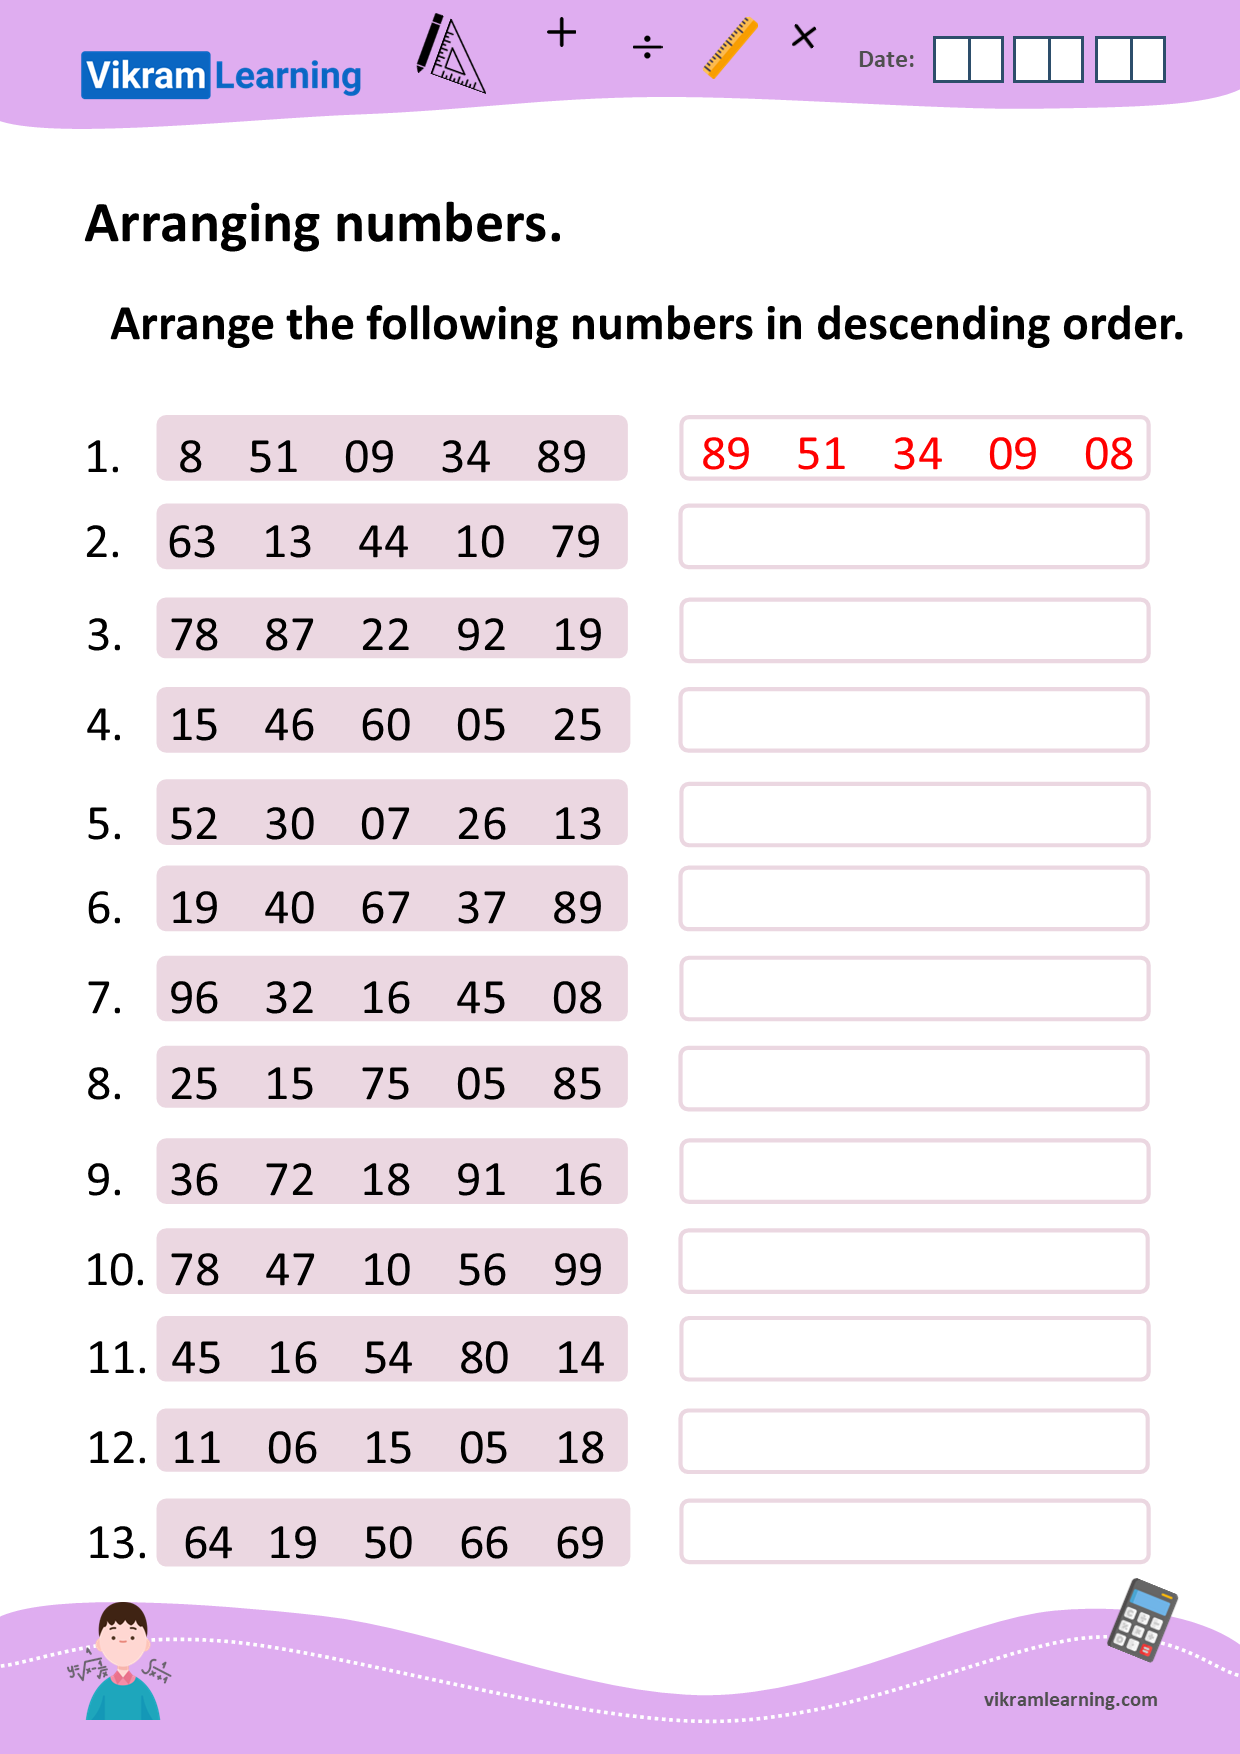 Download arranging numbers in ascending order, and descending order worksheets